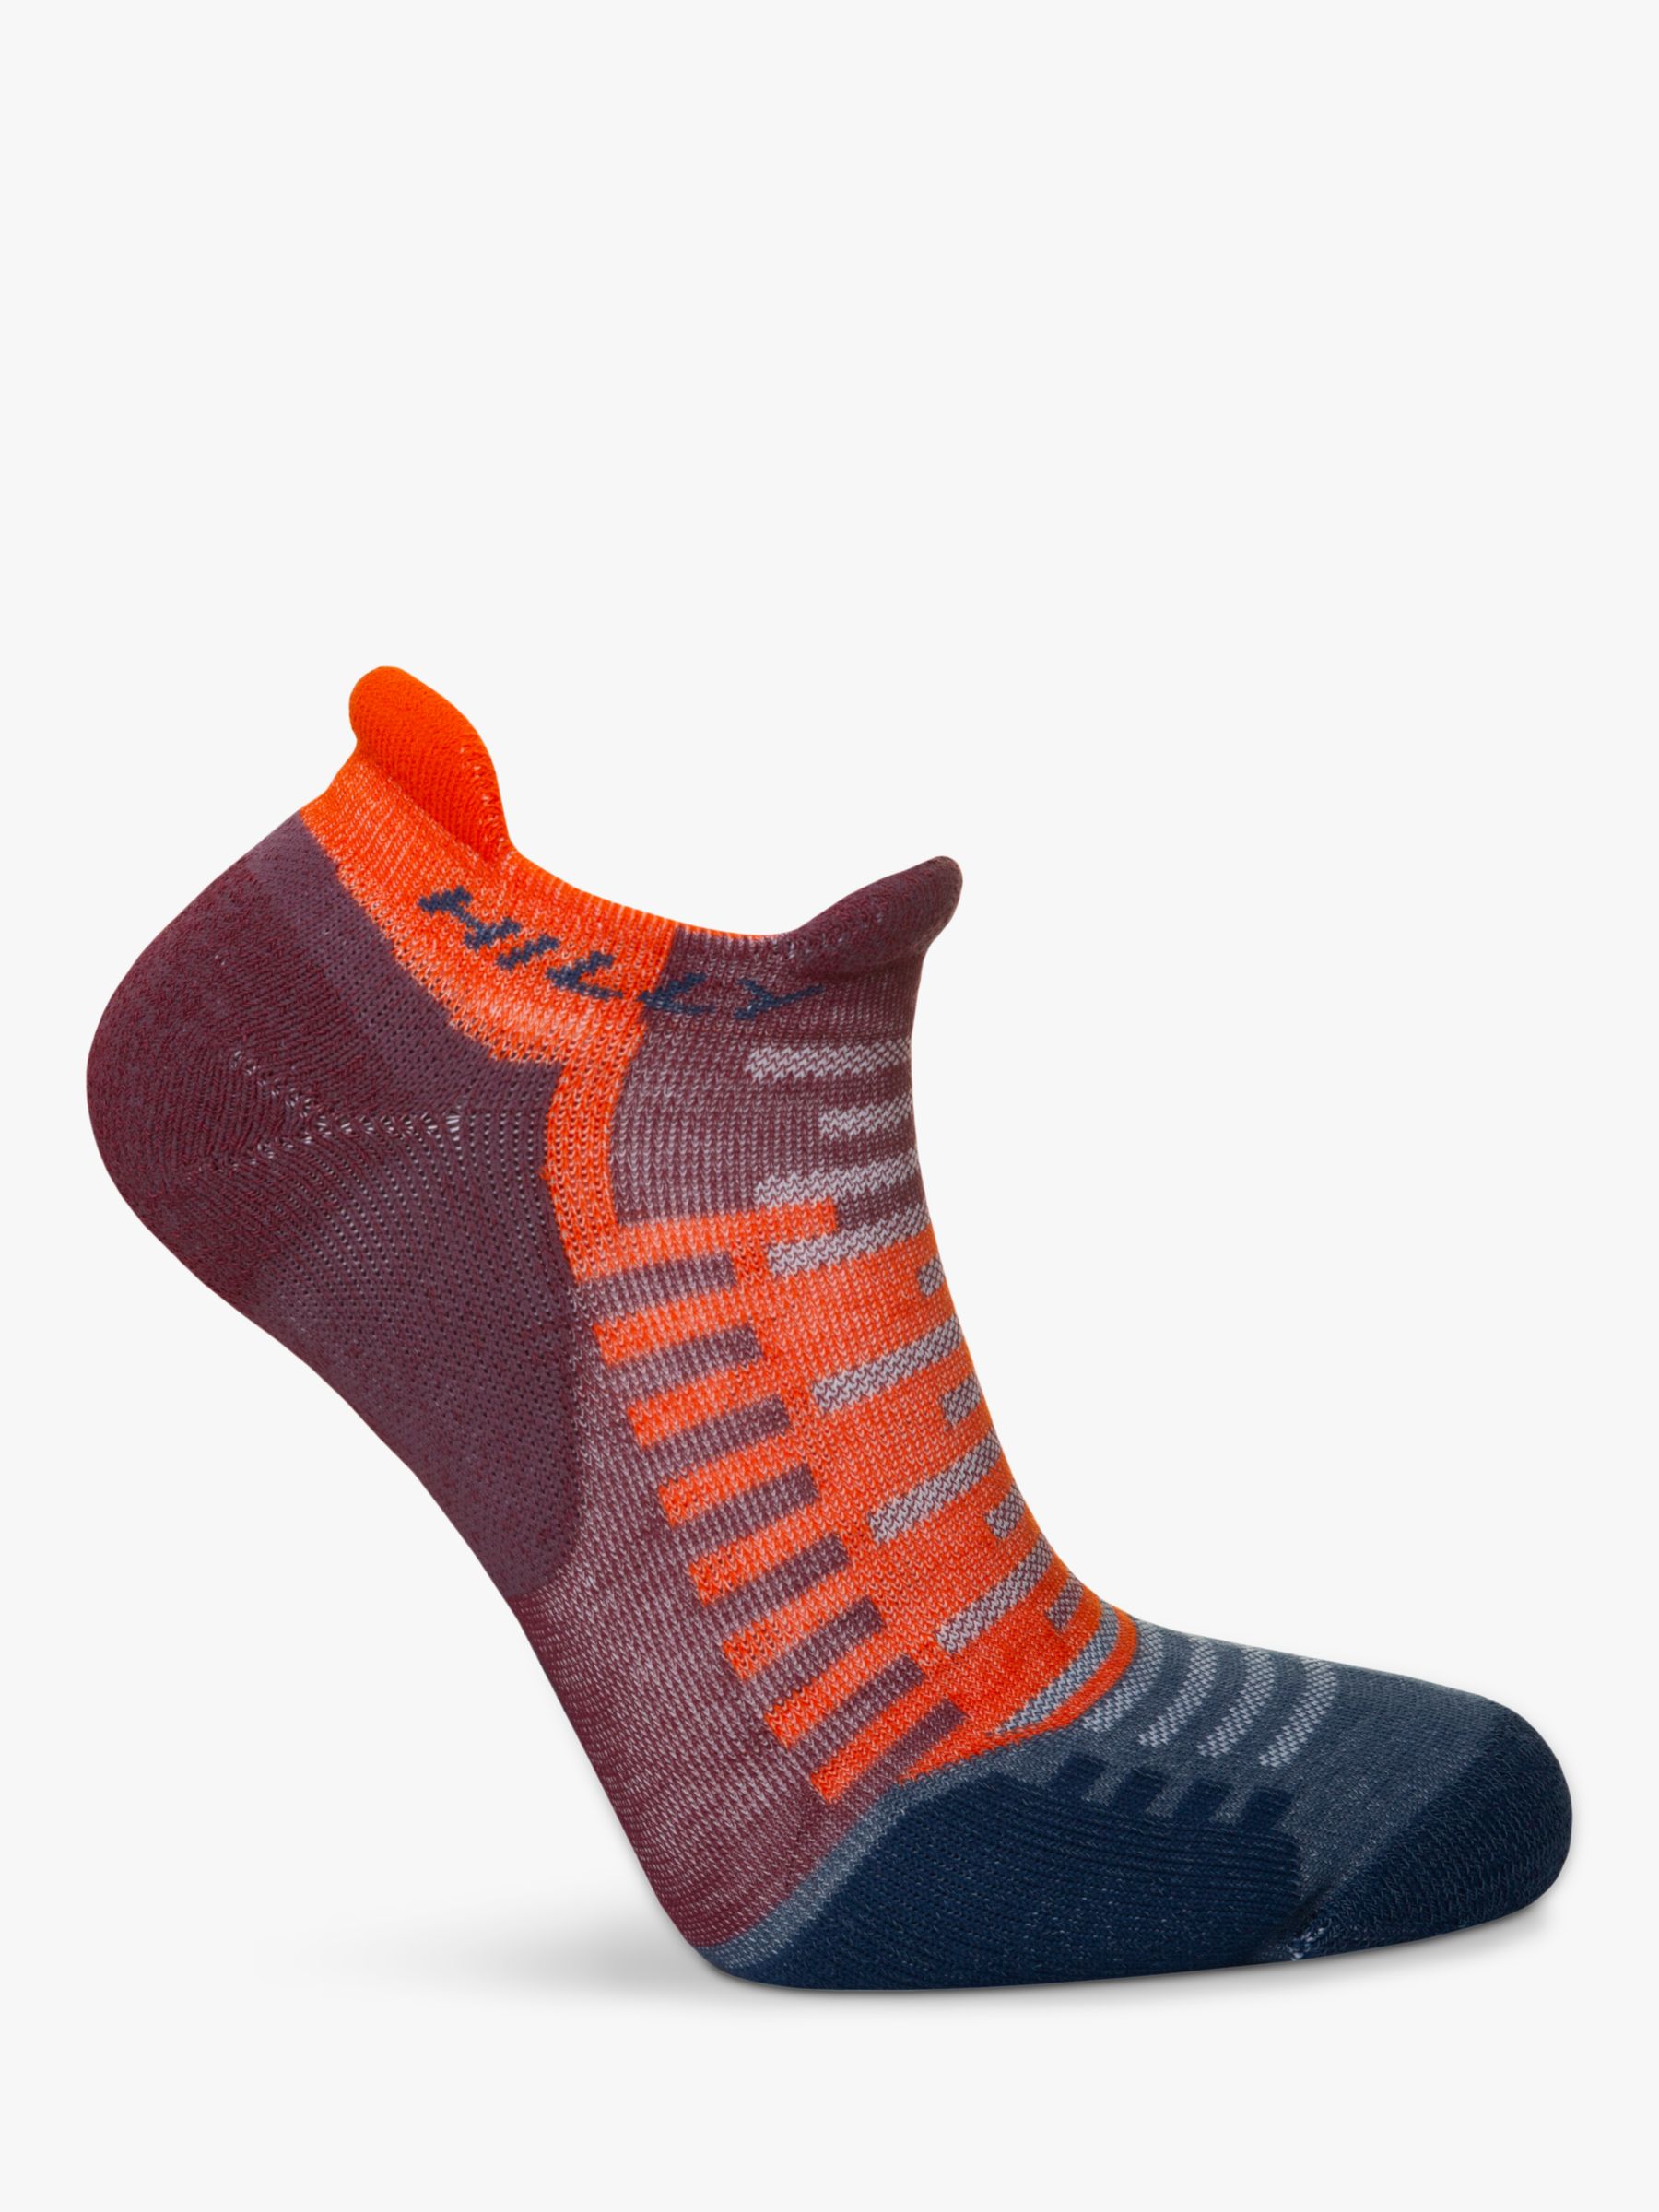 Hilly Active Socklet Running Socks, Burgundy/Orange at John Lewis ...